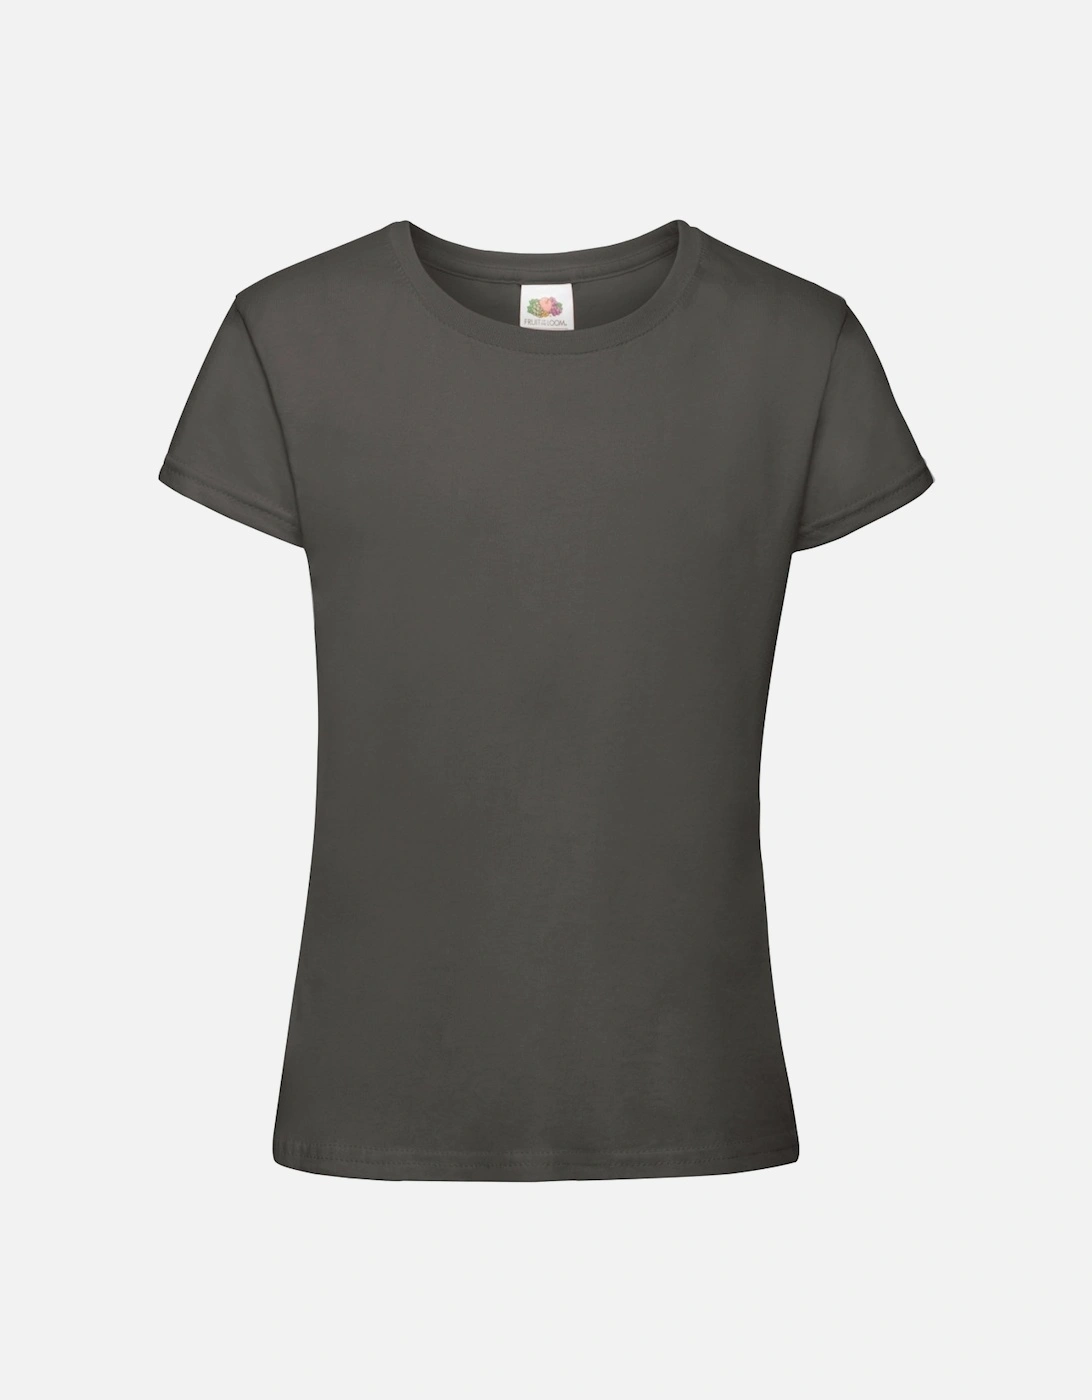 Girls Sofspun Short Sleeve T-Shirt (Pack of 2), 4 of 3